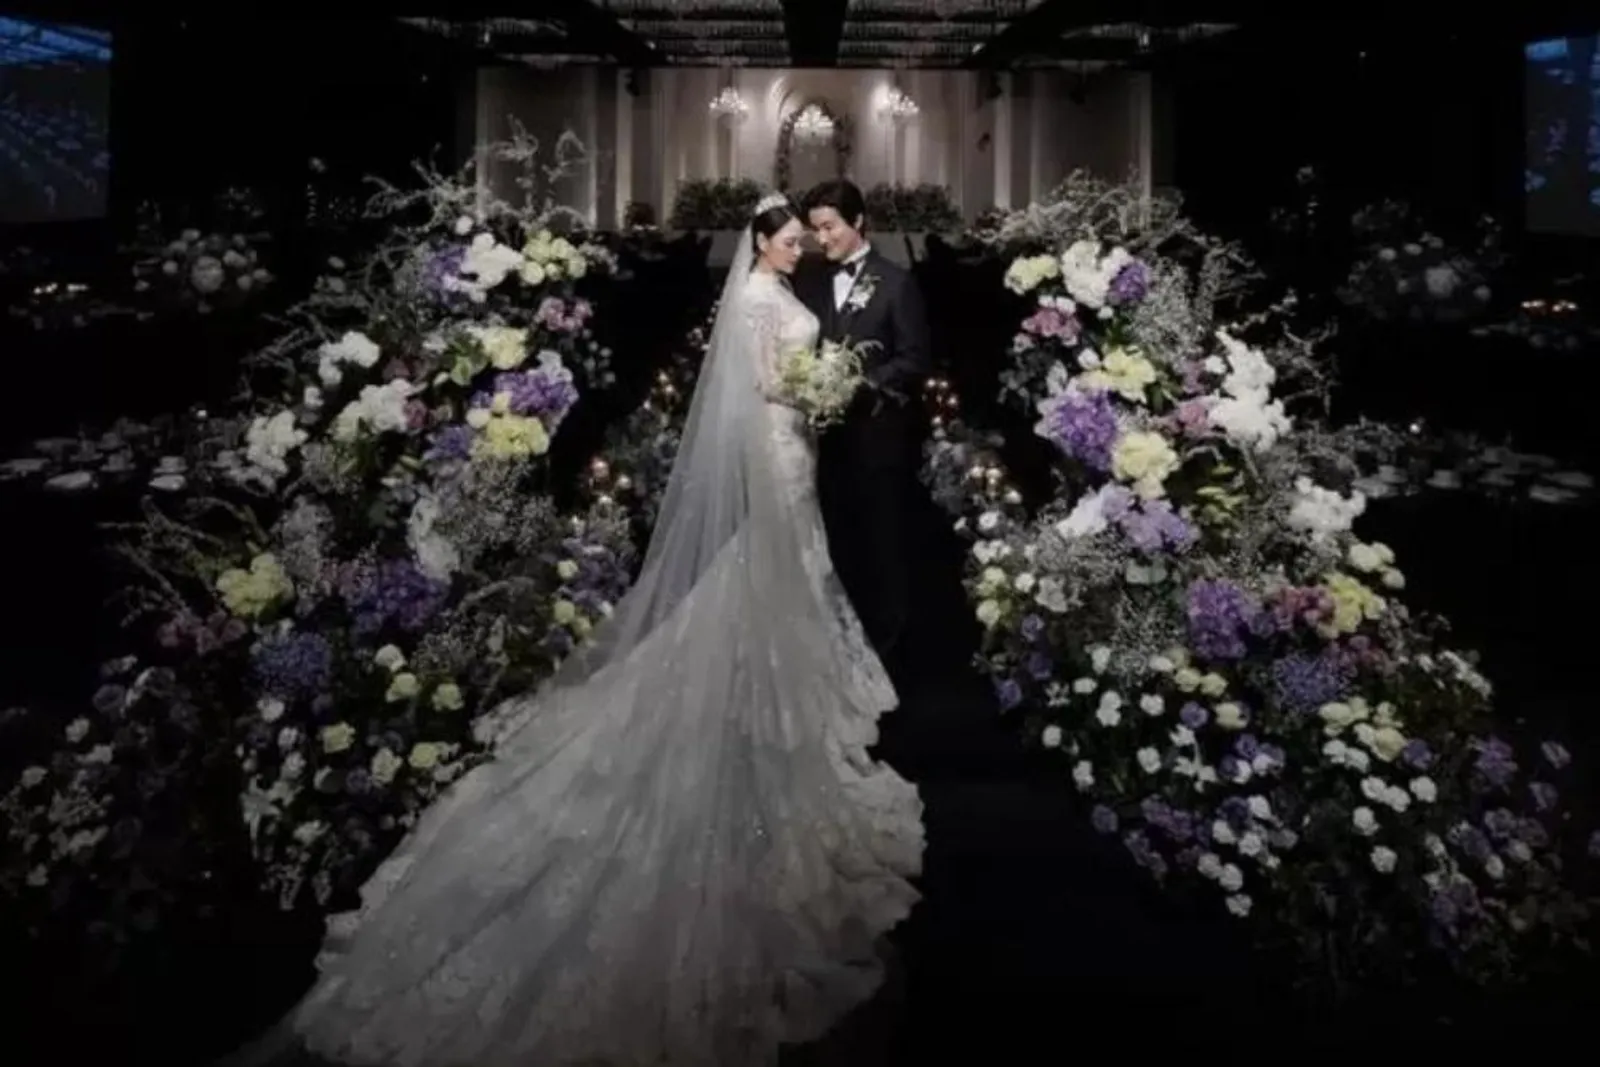 Kisah Cinta Aktor Heo Dong Won dan Istri, Cerai Usai Setahun Menikah